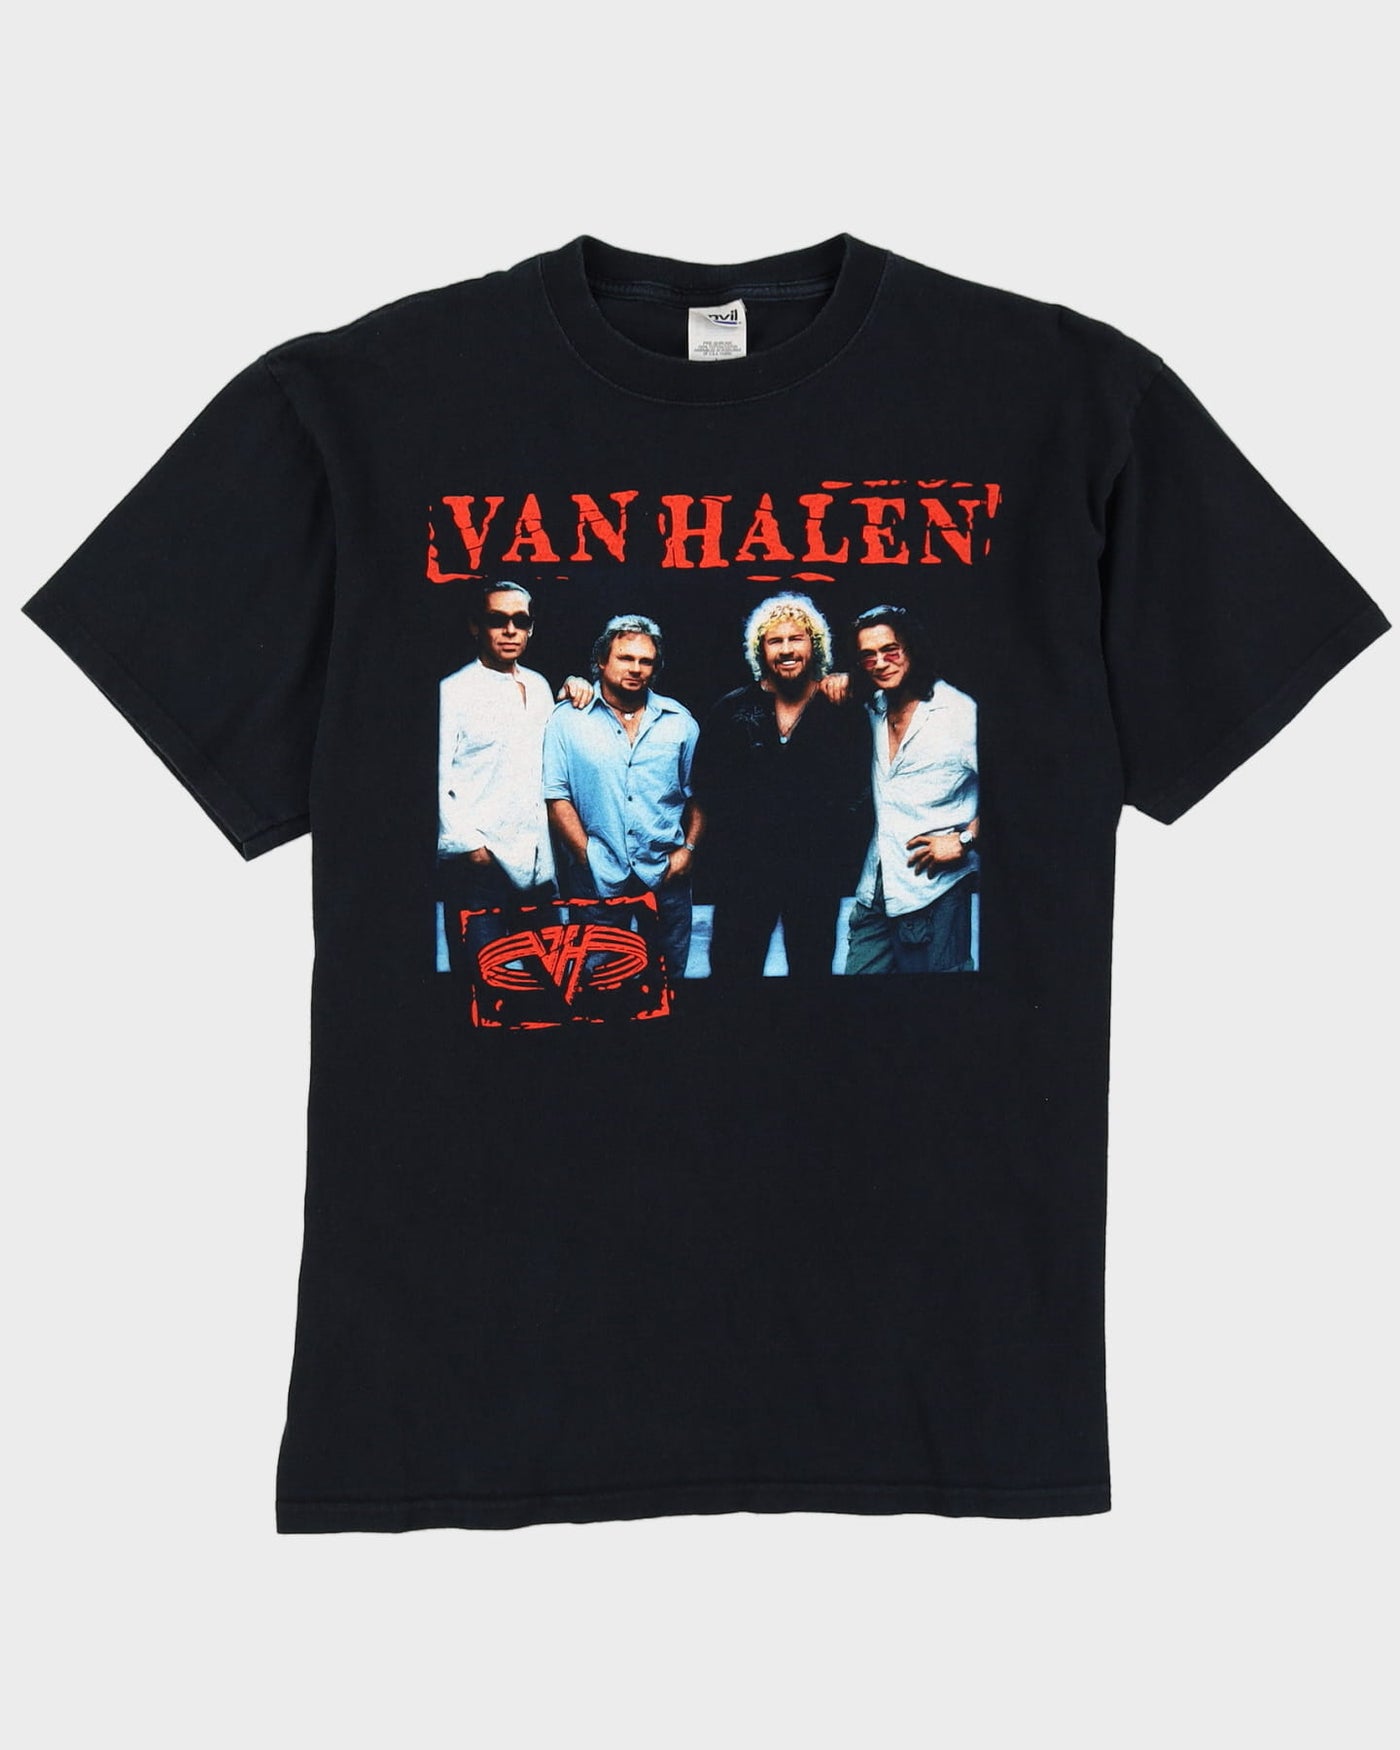 2004 Van Halen Black Graphic Tour Band T-Shirt - L